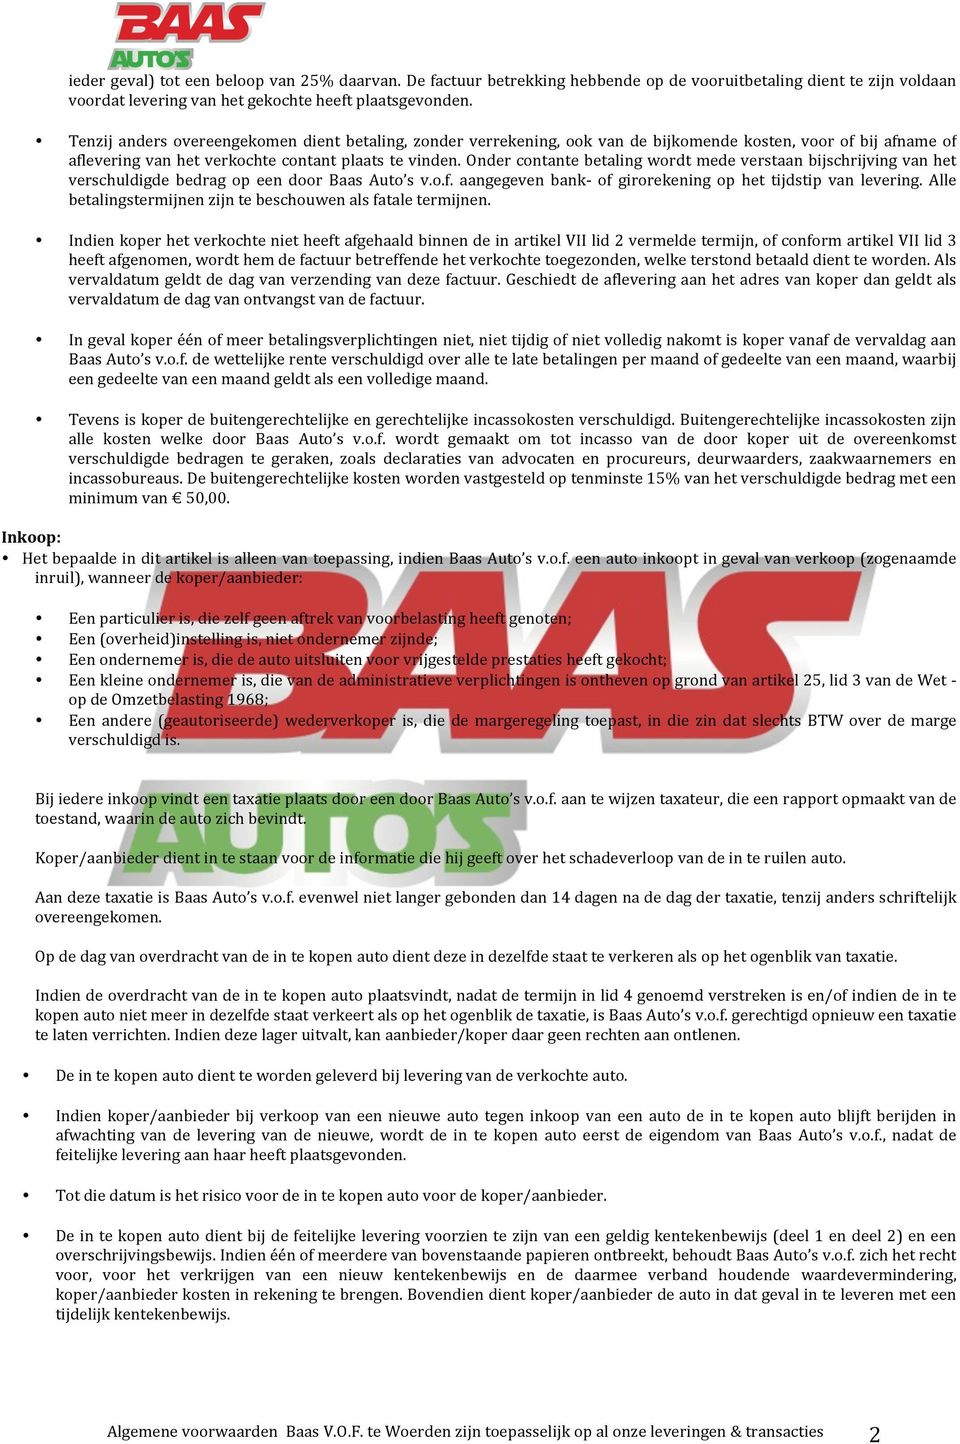 Onder contante betaling wordt mede verstaan bijschrijving van het verschuldigde bedrag op een door Baas Auto s v.o.f. aangegeven bank- of girorekening op het tijdstip van levering.